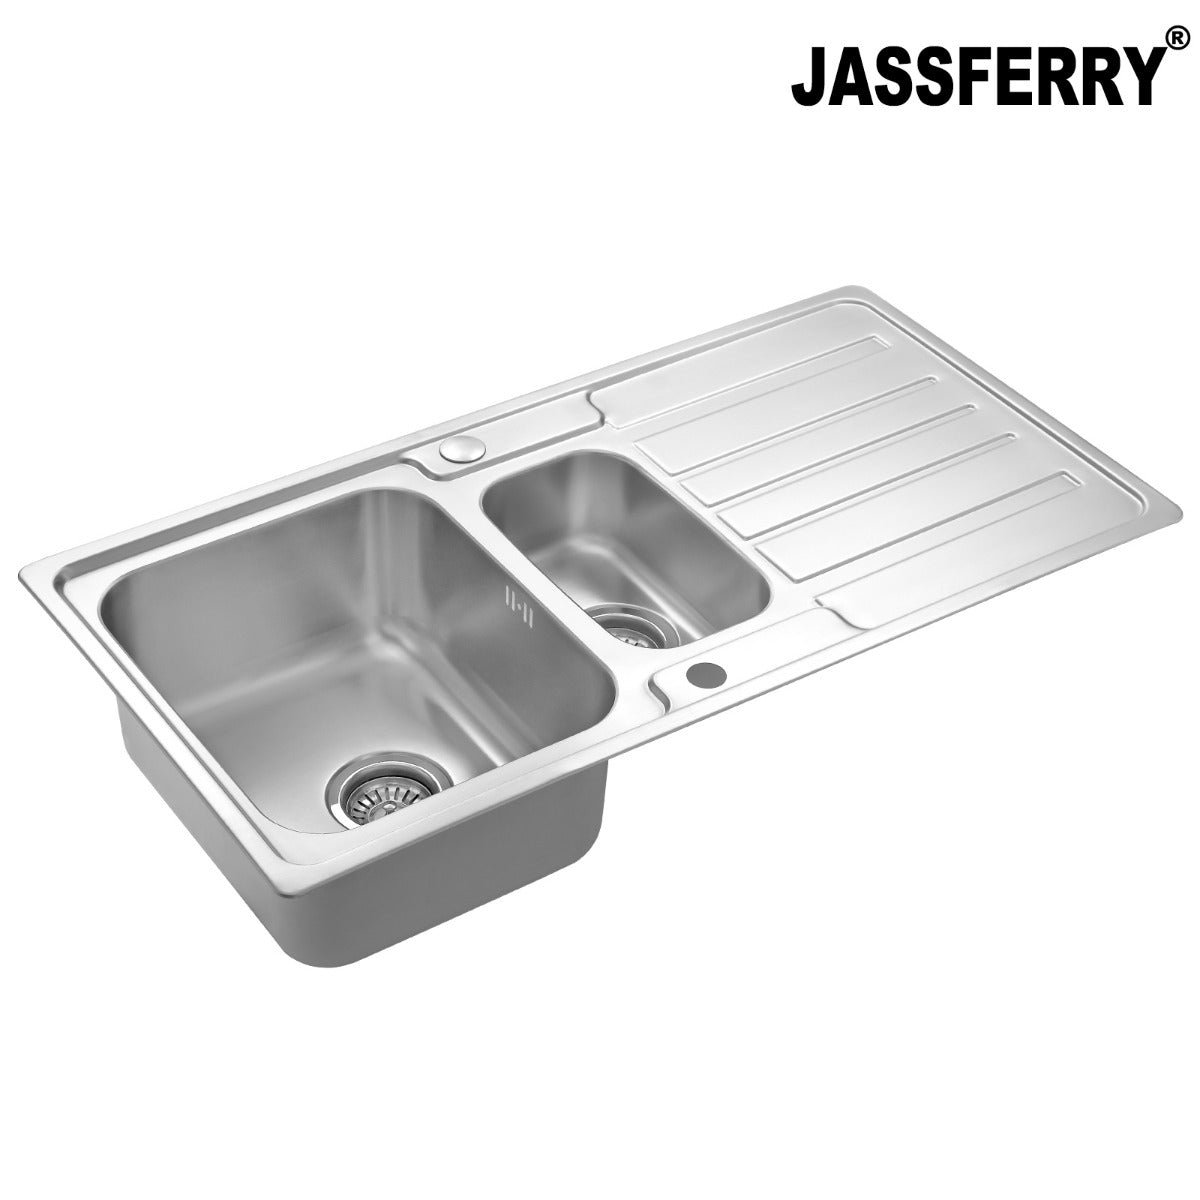 JassferryJASSFERRY Stainless Steel Kitchen Sink Inset One Half Bowl Reversible DrainerKitchen Sinks